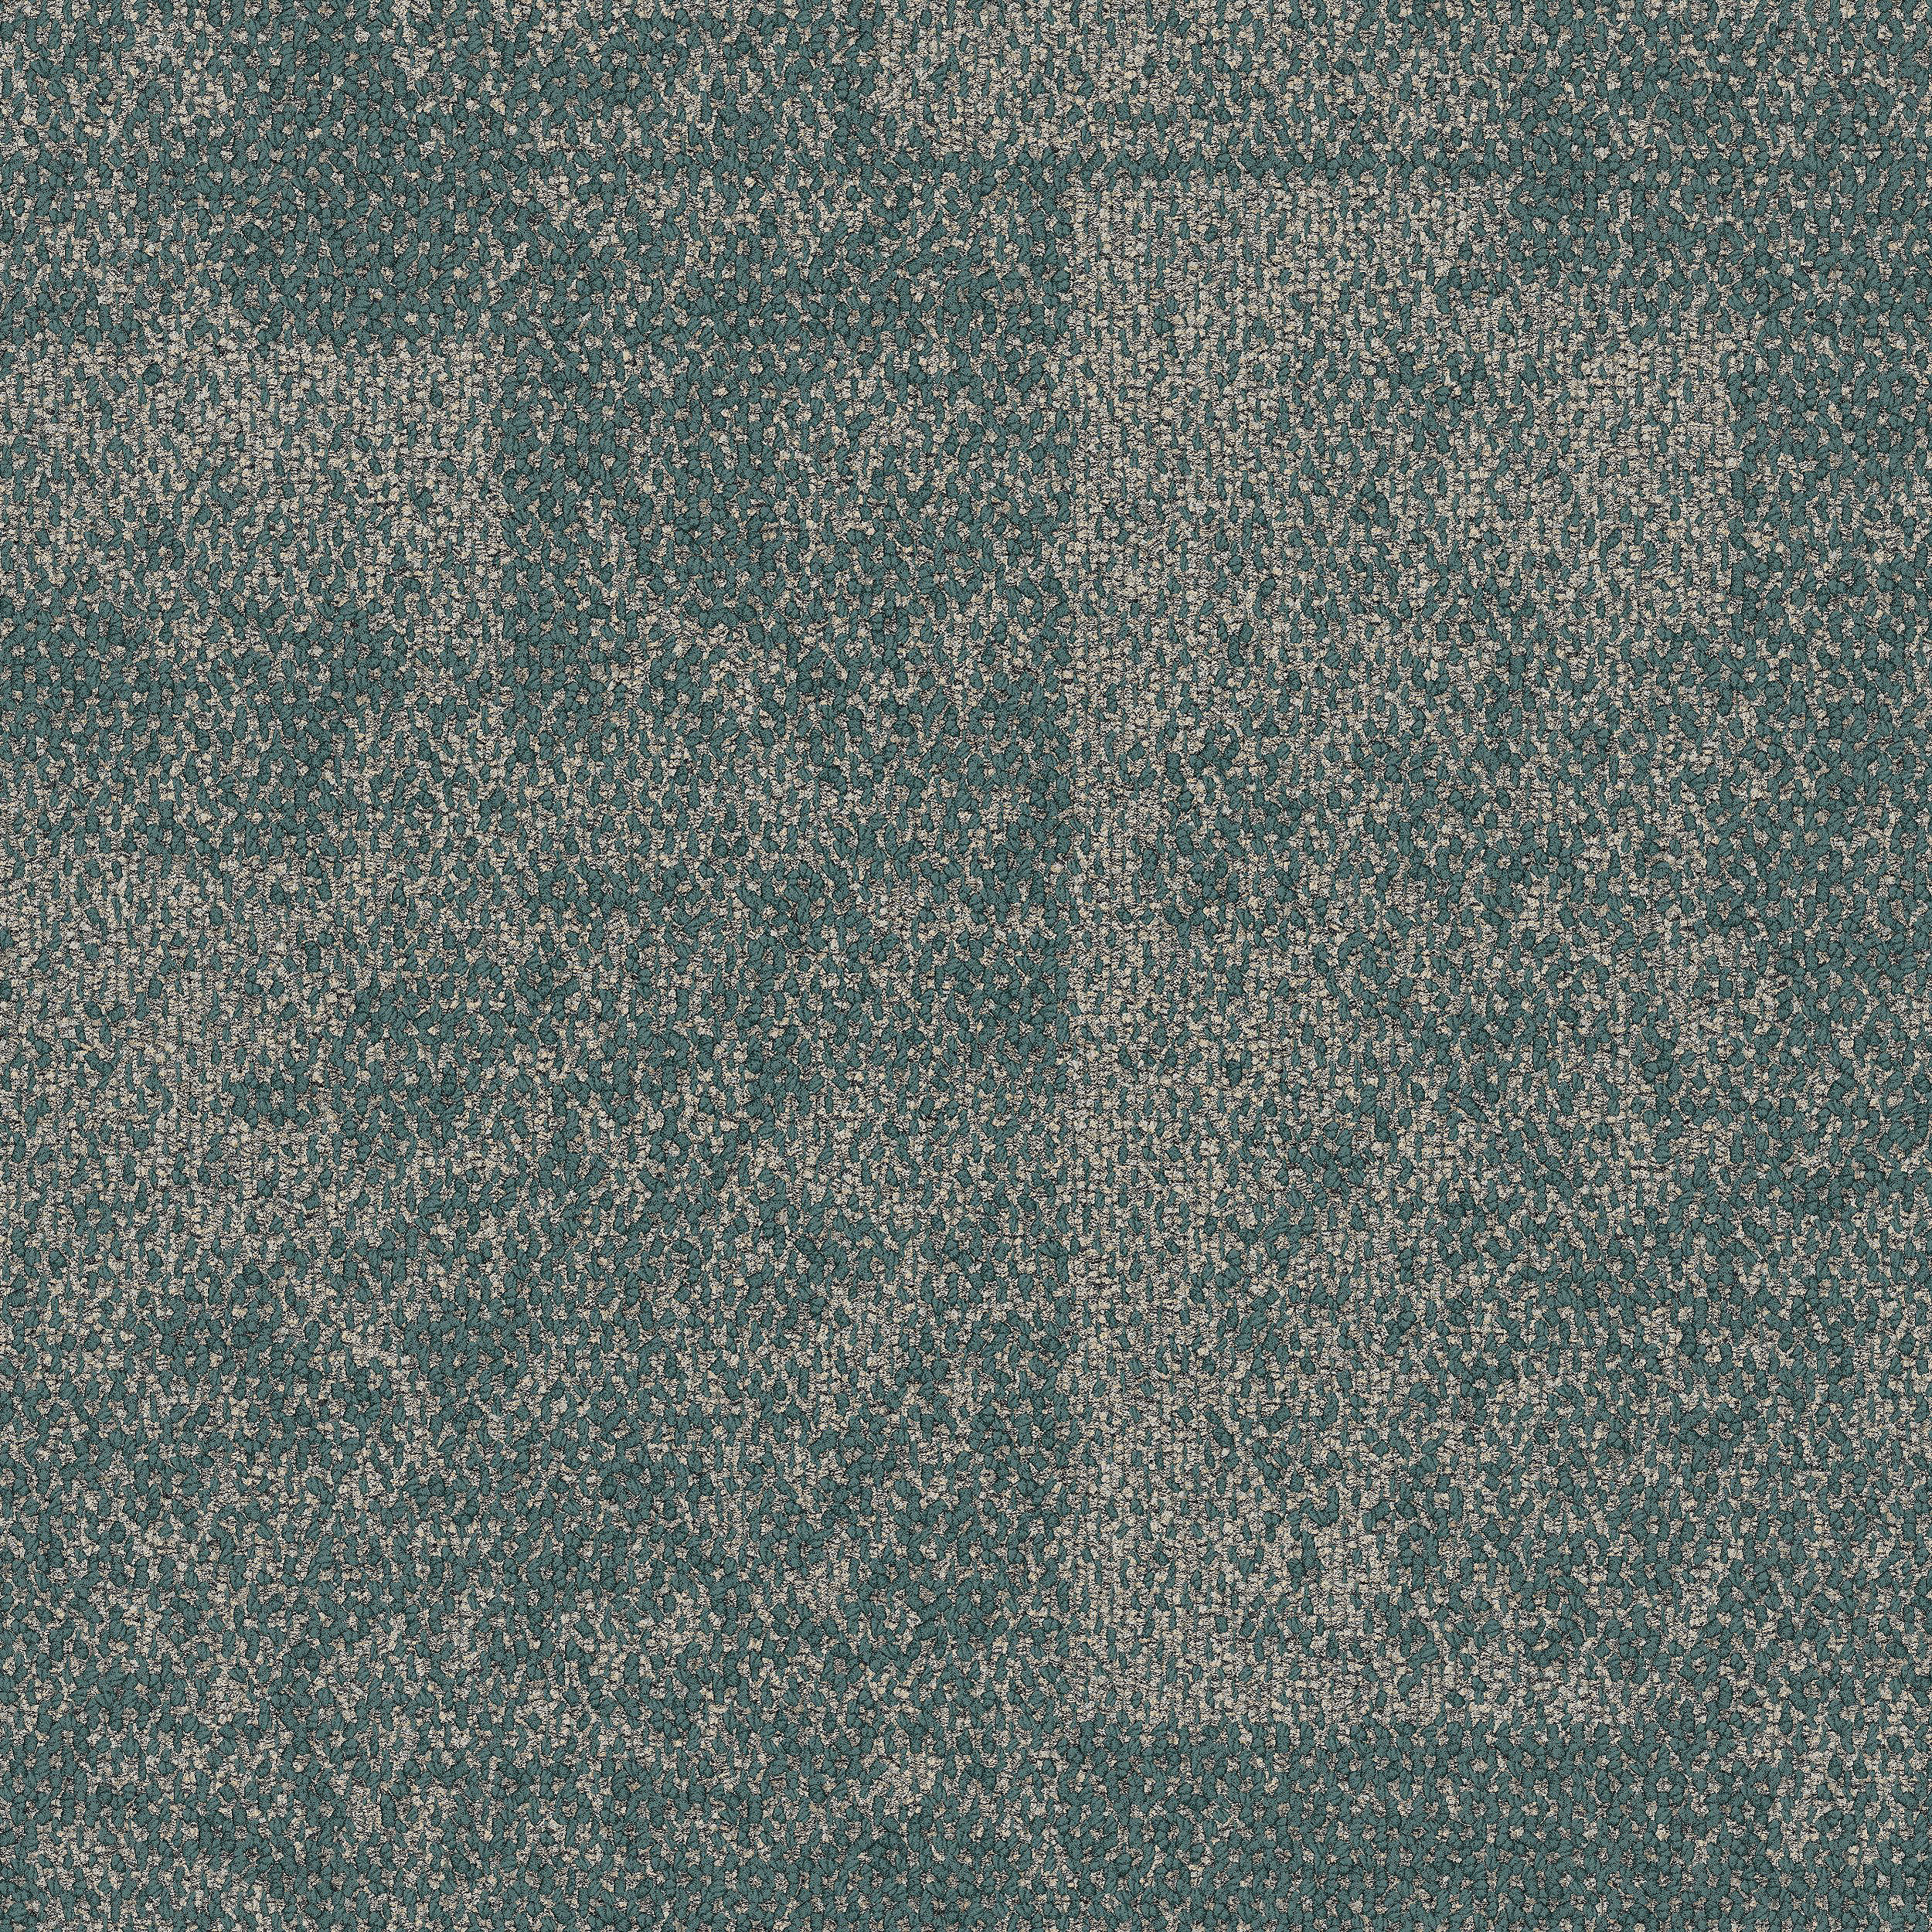 Open Air 404 Accent Carpet Tile In Teal número de imagen 5